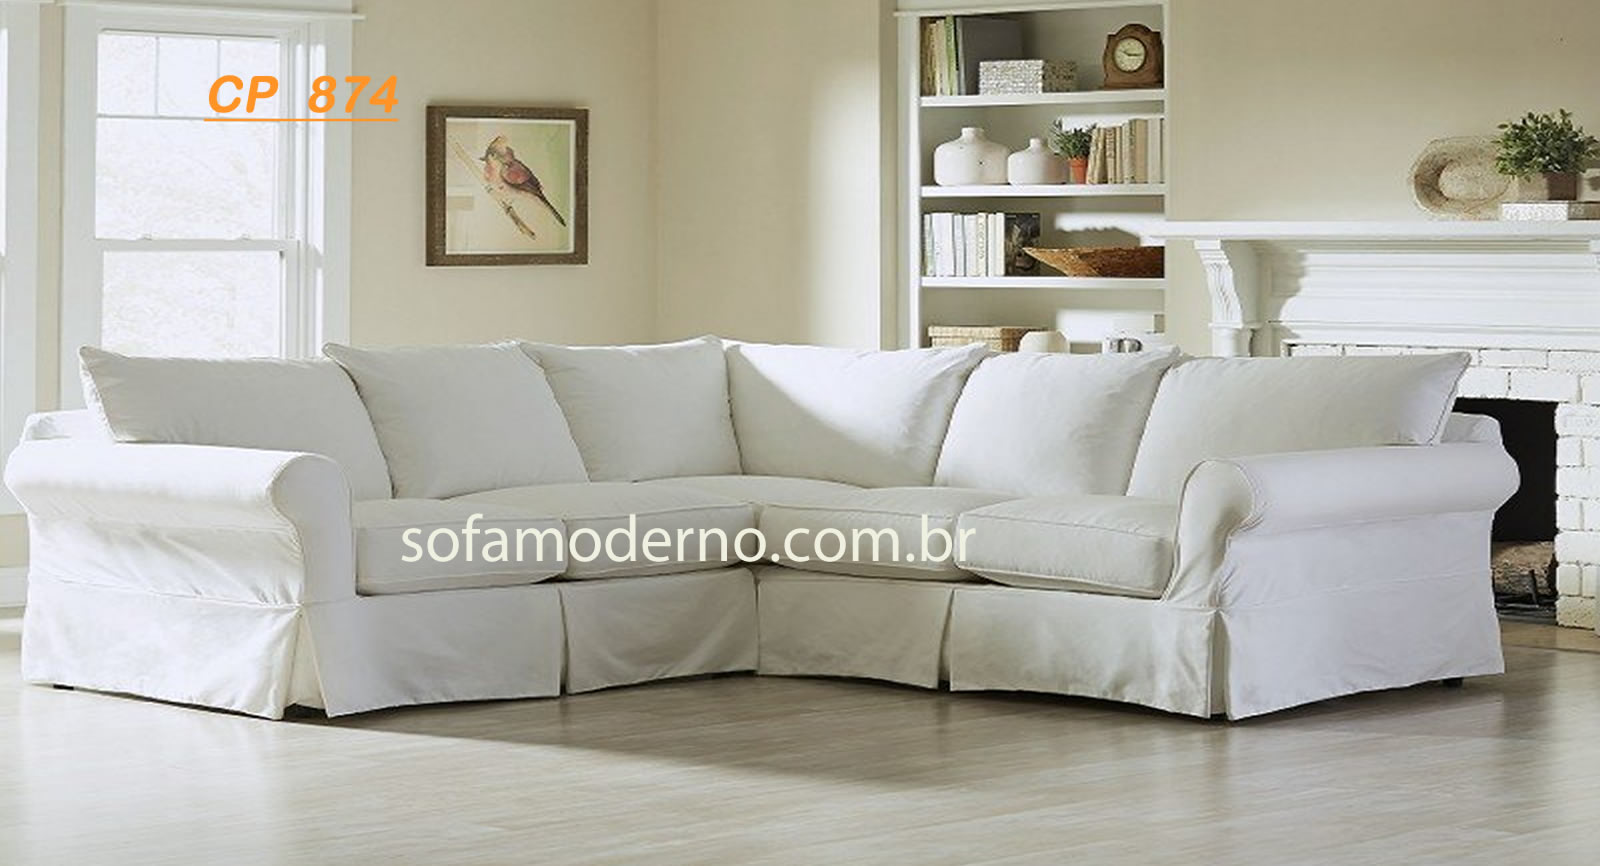 Capa de Sofá - capa de sofá sob medida - capa para sofa de canto - capa sofá  retrátil - capa sofá reclinavel | sofamoderno.com.br